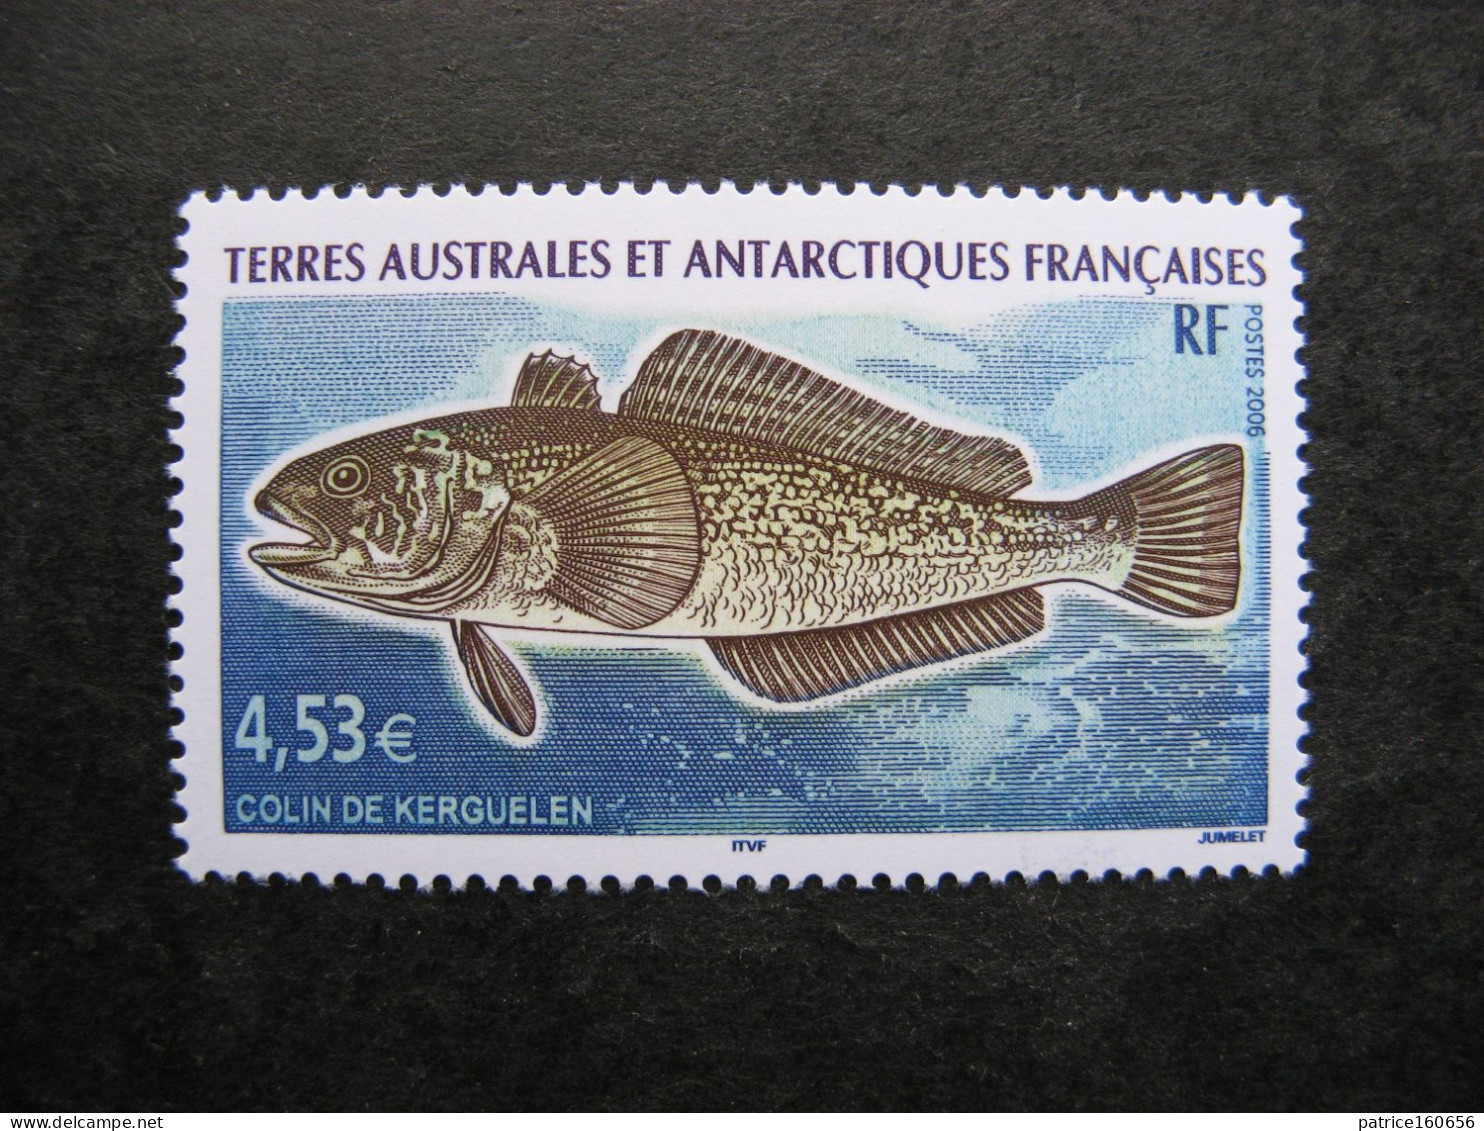 TAAF: TB N° 439, Neuf XX. - Unused Stamps